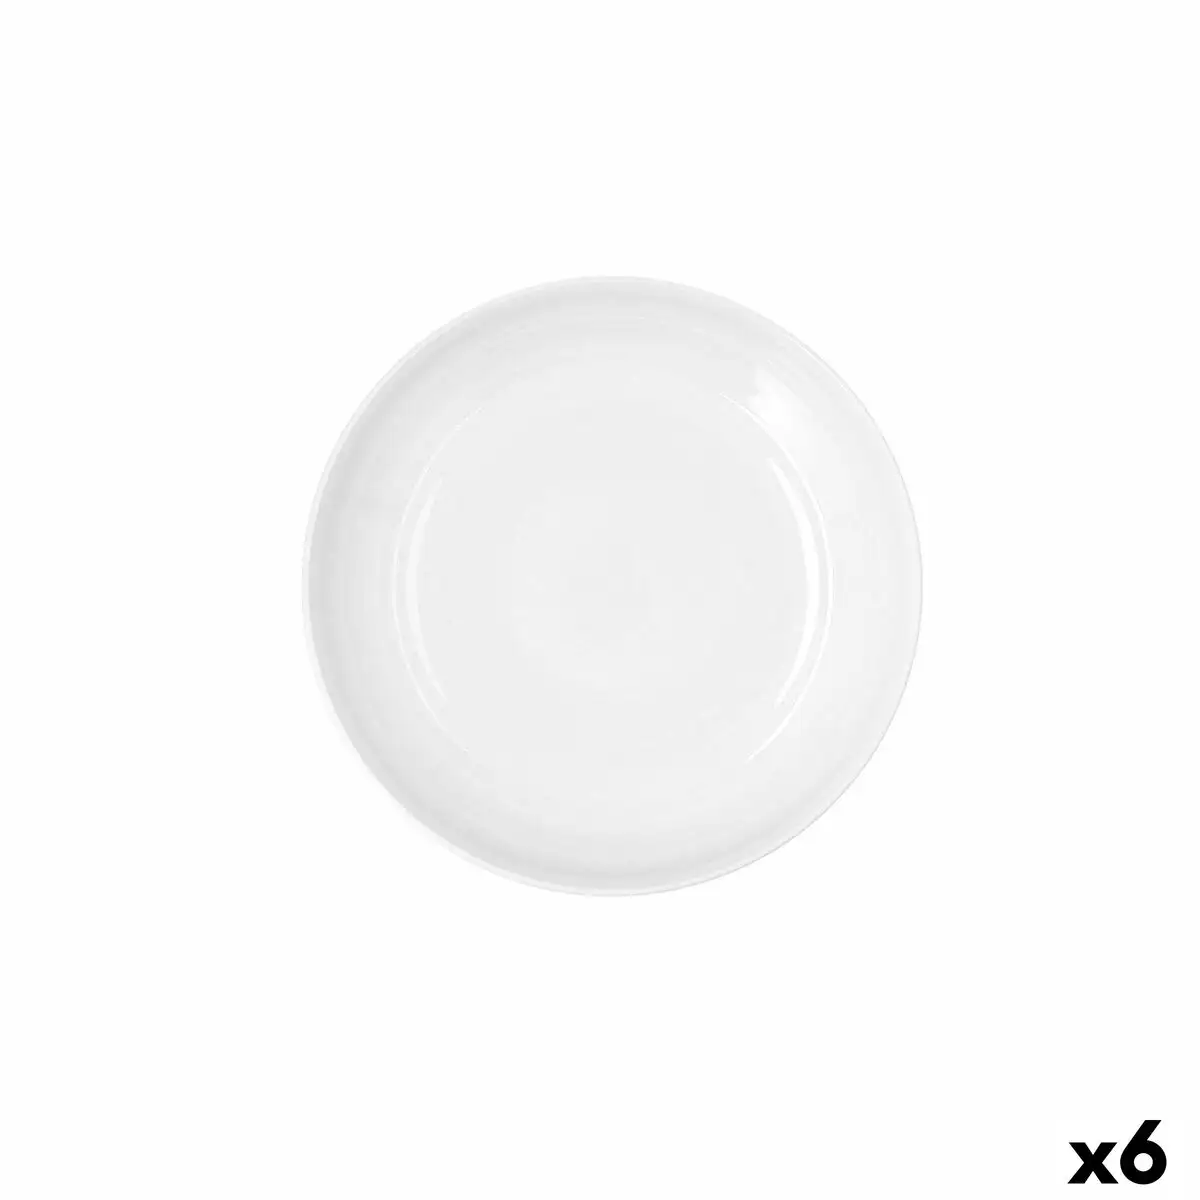 Assiette creuse ariane artisan ceramique blanc 25 cm 6 unites _6529. DIAYTAR SENEGAL - Où Choisir Devient une Découverte. Explorez notre boutique en ligne et trouvez des articles qui vous surprennent et vous ravissent à chaque clic.